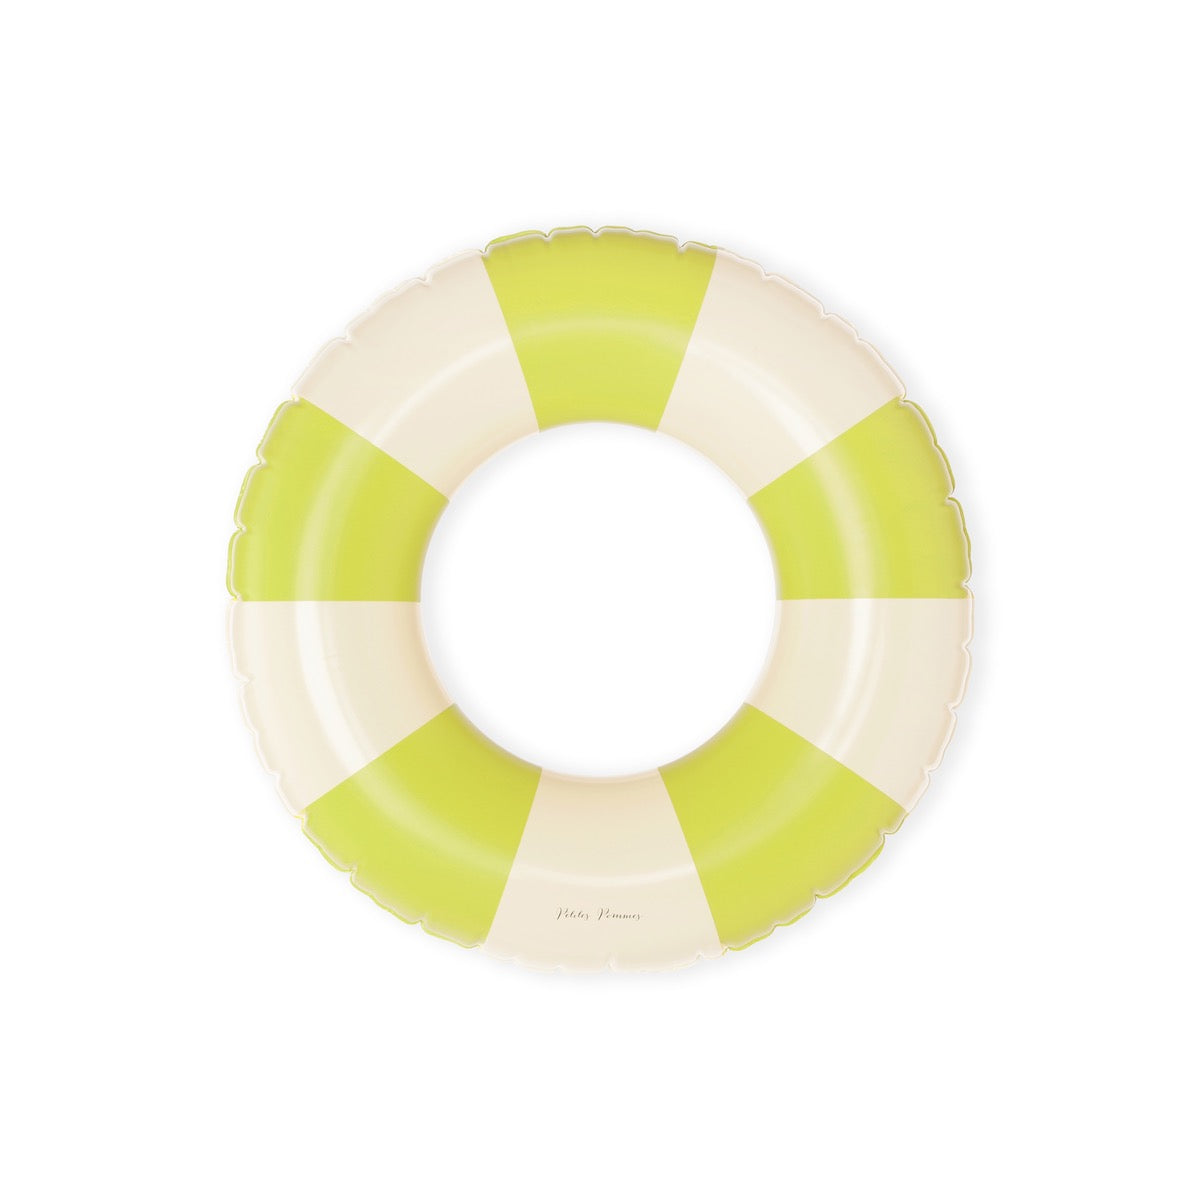 De Petites Pommes Olivia zwemband in de kleur Neon (geel) is een opblaasbare zwemband met een diameter van 45cm. Deze zwemband heeft een leuk en kleurrijk ontwerp in een streep design. VanZus